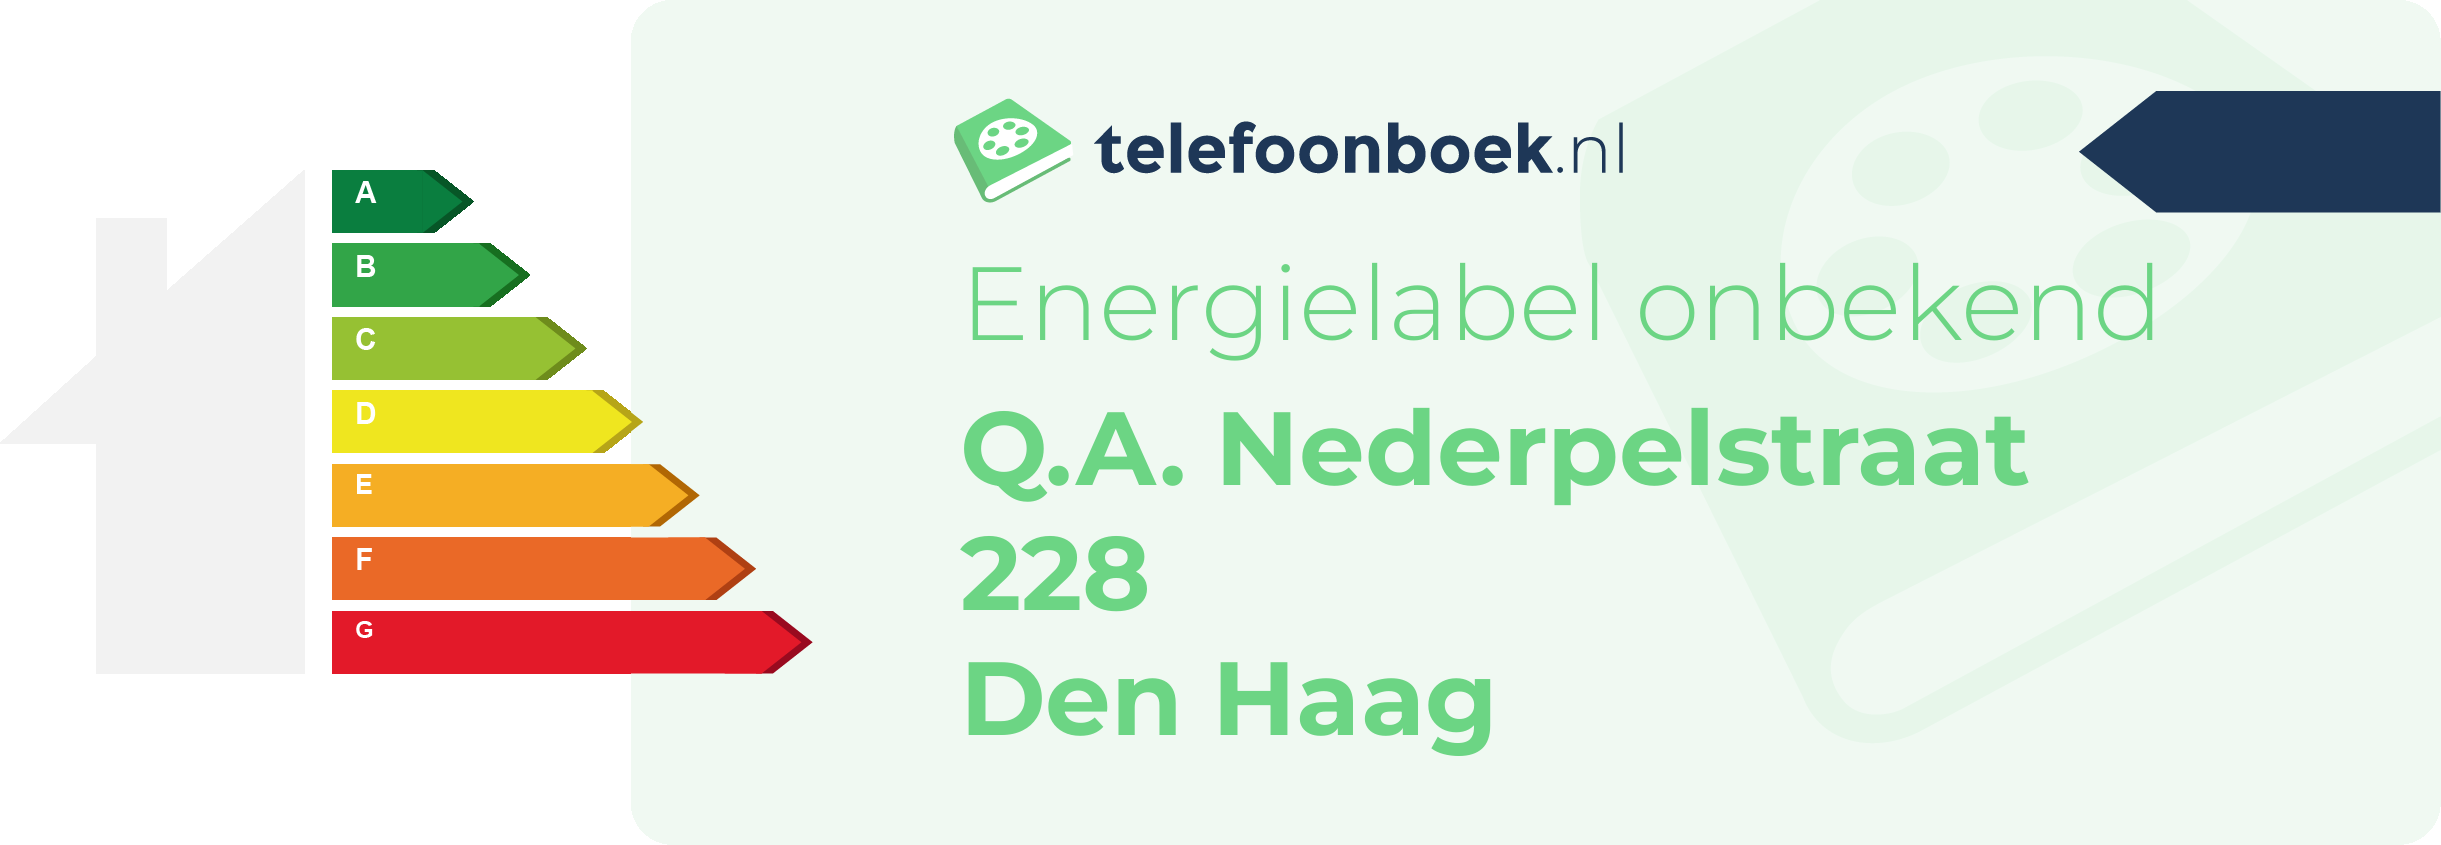 Energielabel Q.A. Nederpelstraat 228 Den Haag